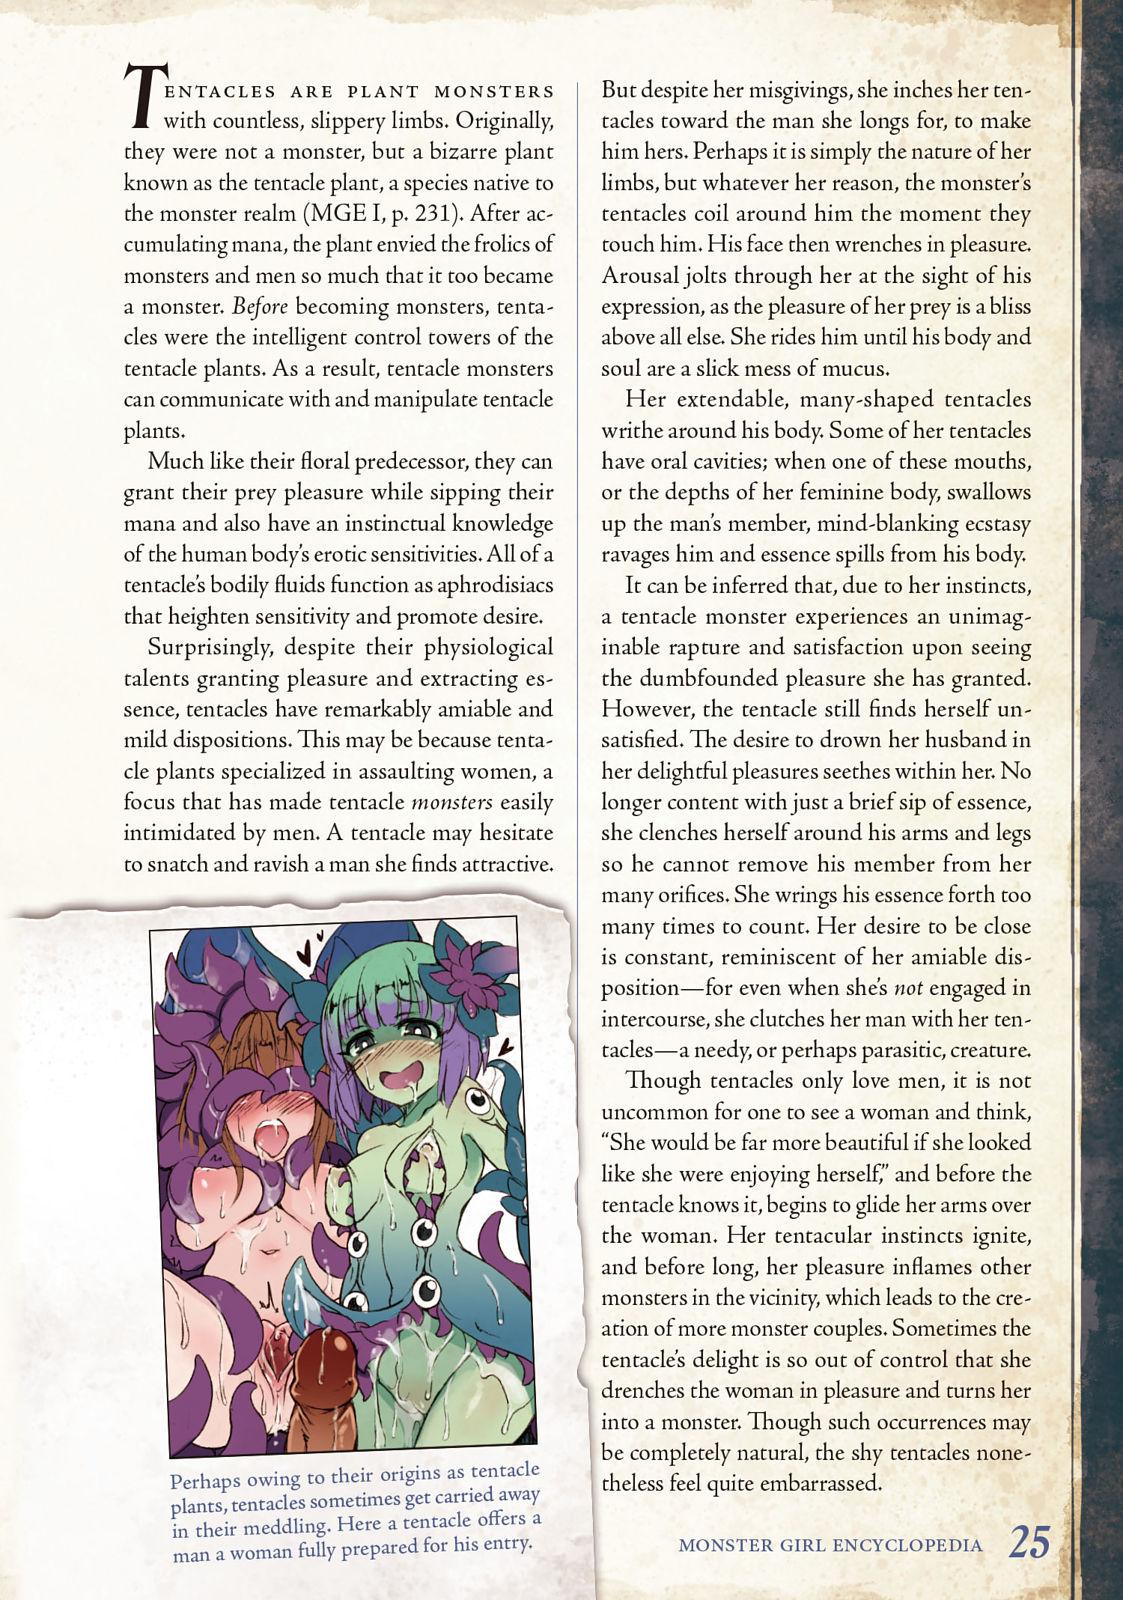 Monster Girl Encyclopedia Vol. 2 25